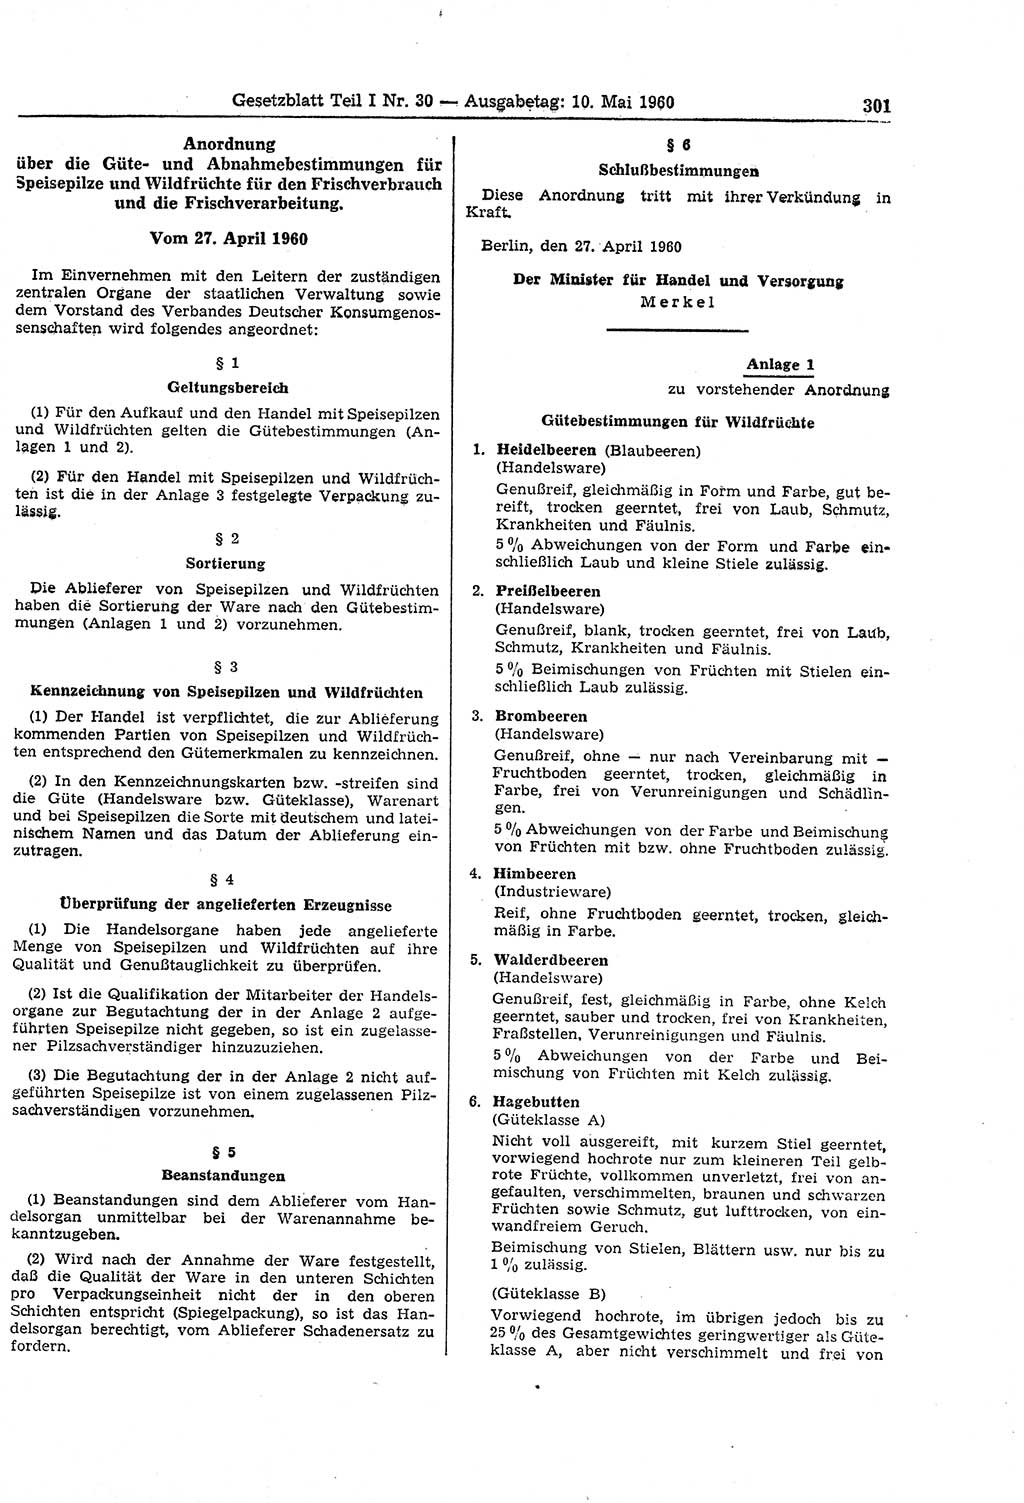 Gesetzblatt (GBl.) der Deutschen Demokratischen Republik (DDR) Teil Ⅰ 1960, Seite 301 (GBl. DDR Ⅰ 1960, S. 301)